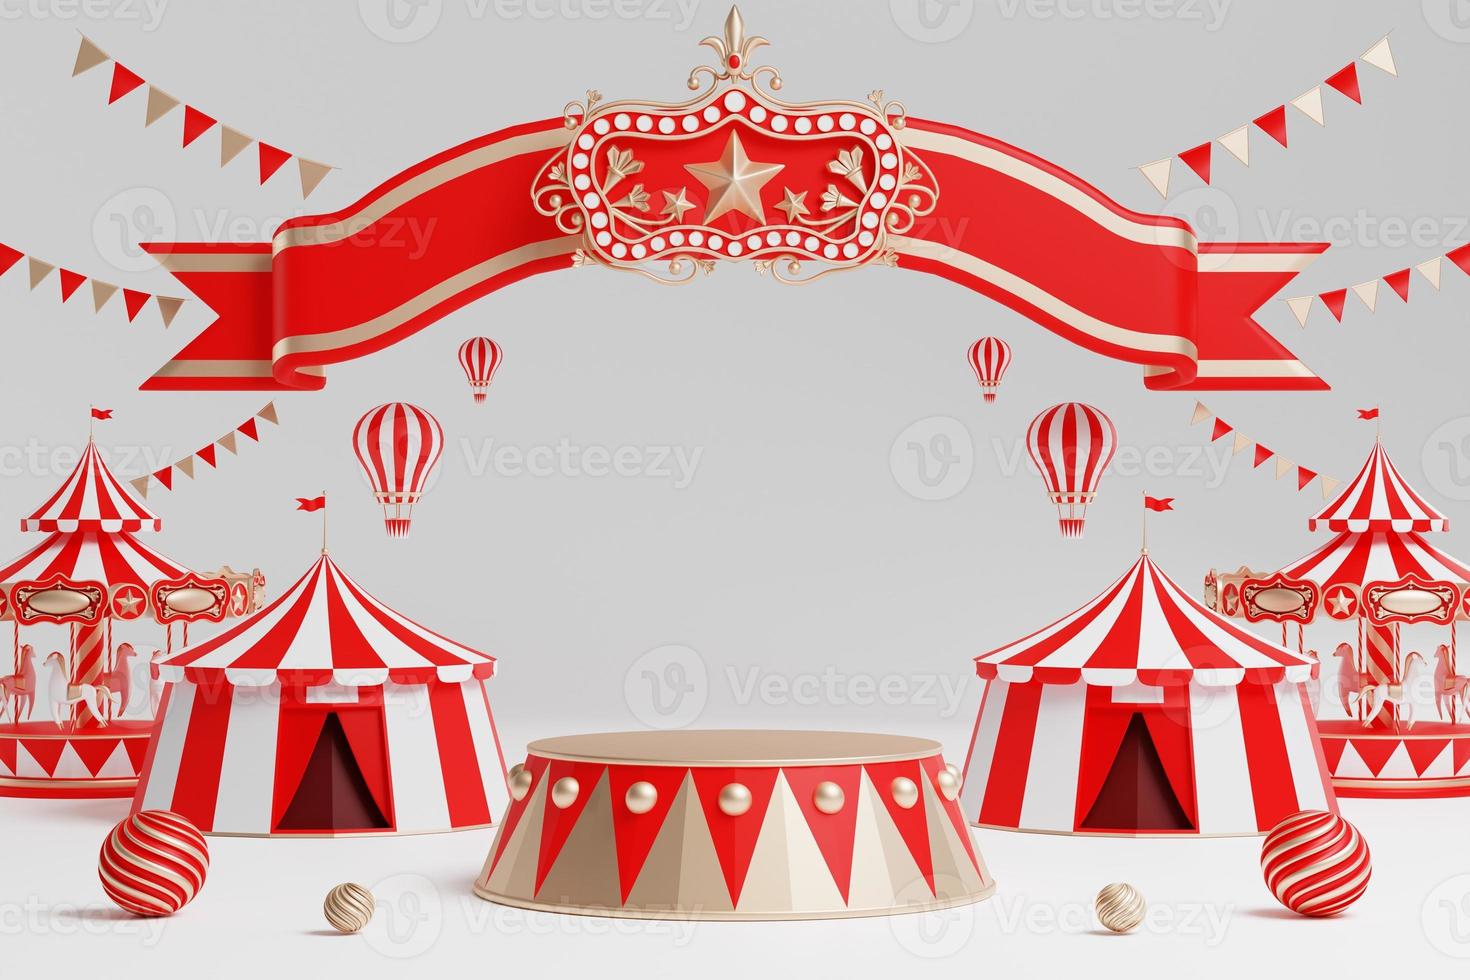 parque de diversões 3d, circo, pódio de tema de feira de carnaval com muitos passeios e lojas ilustração 3d de tenda de circo foto